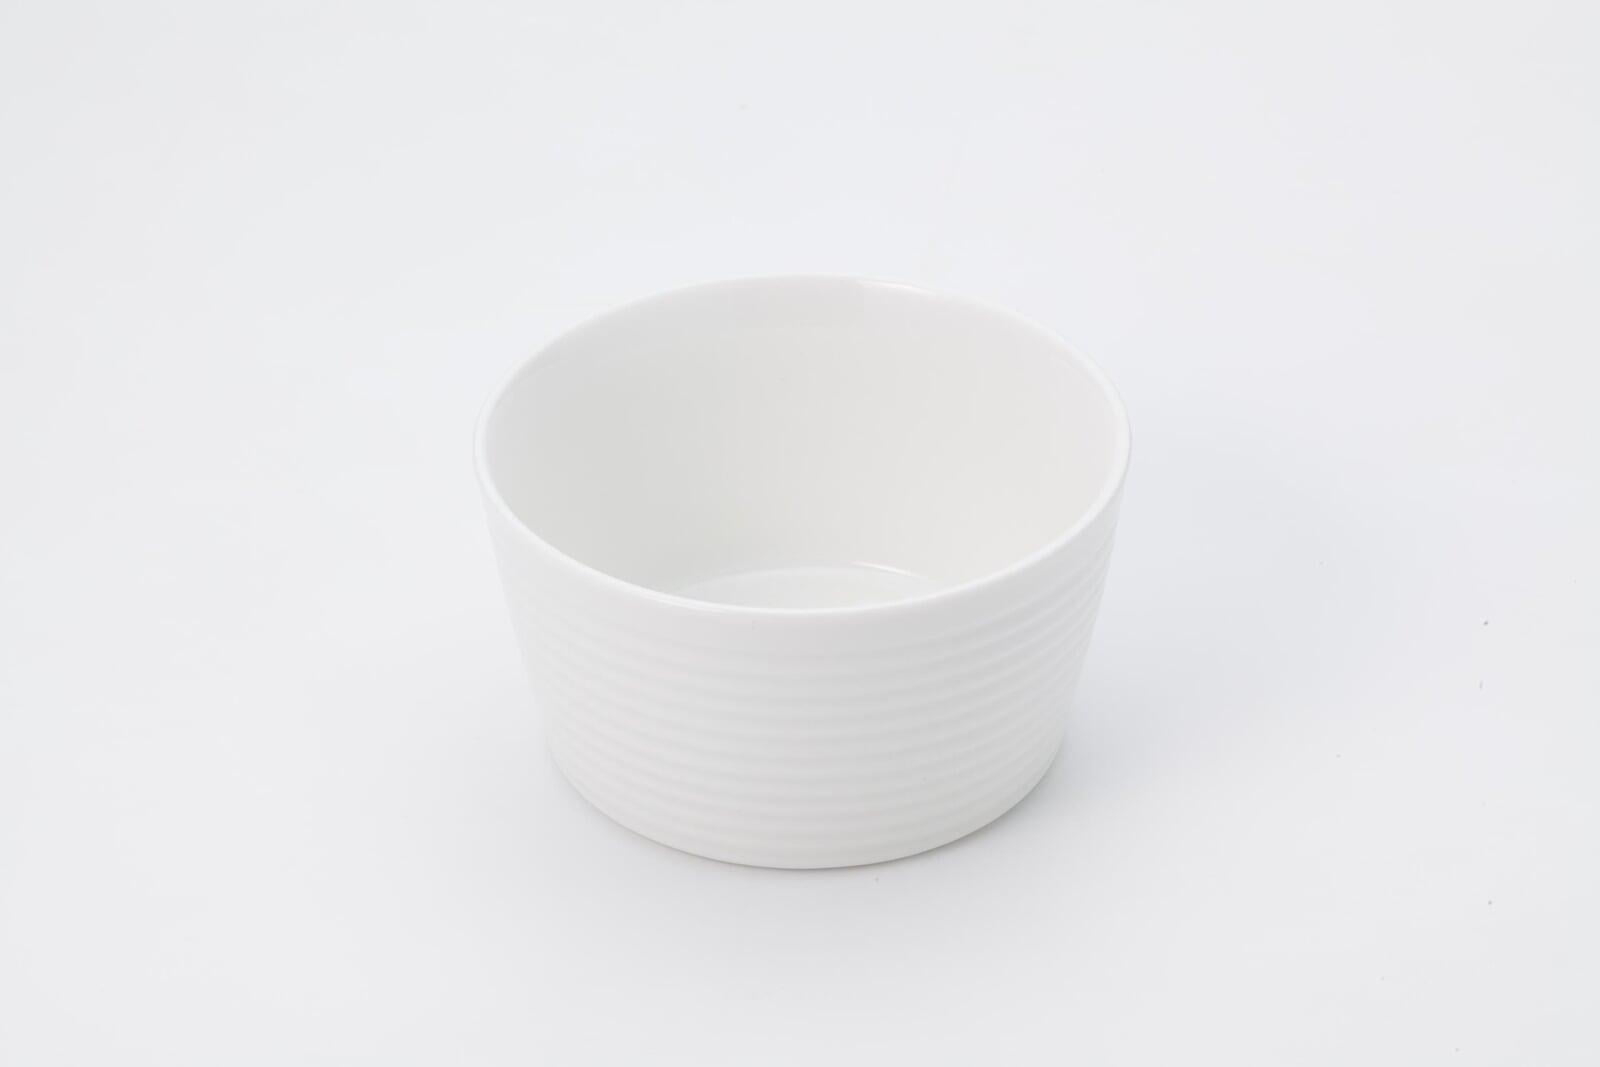 カップ - 陶器カップ 小皿 内径9.5cm*深さ5cmåç 白 側面波